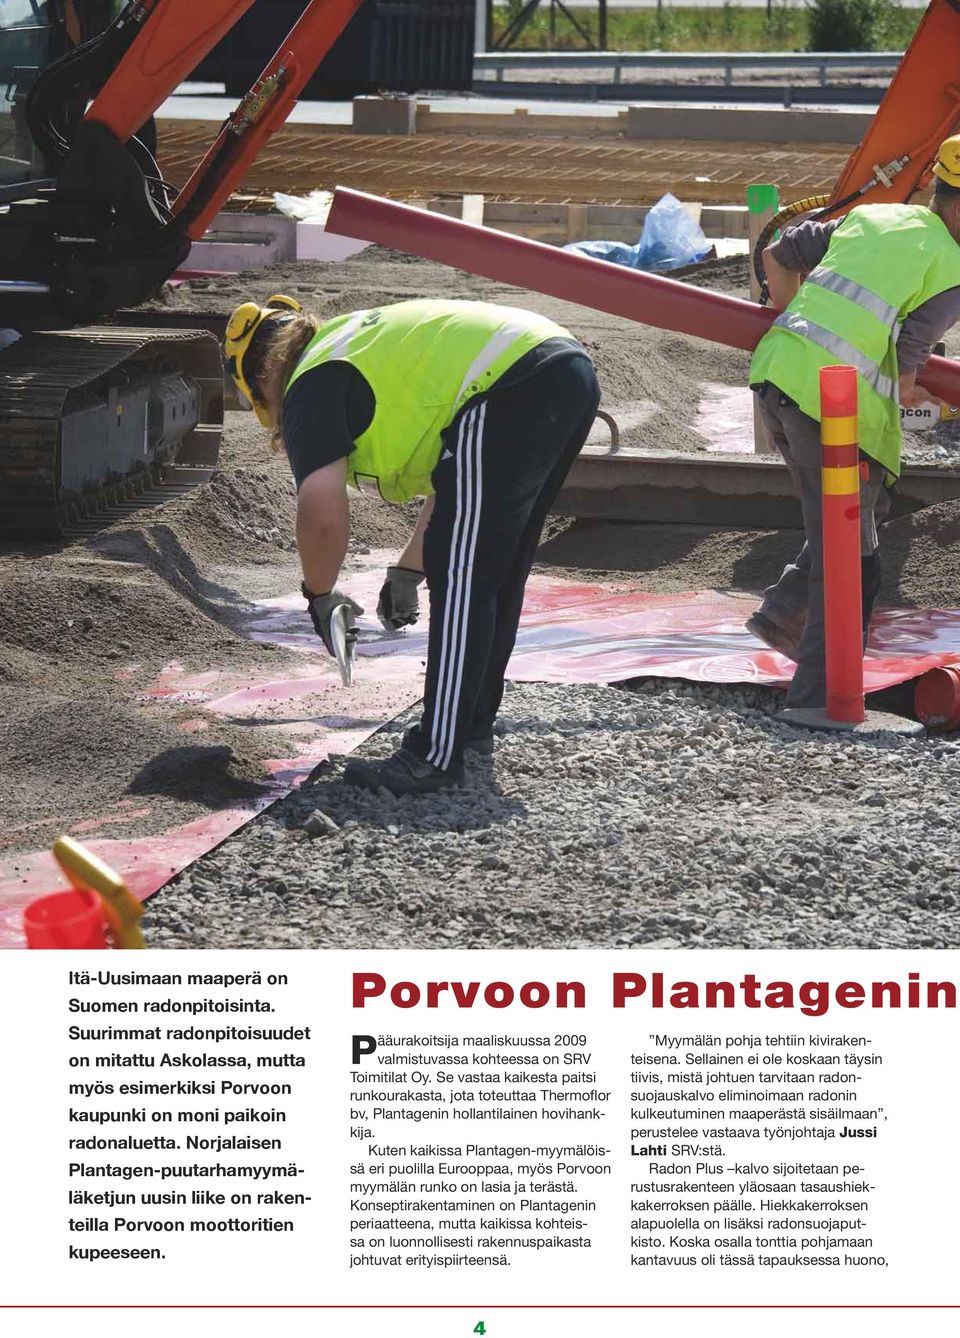 Porvoon Plantagenin Pääurakoitsija maaliskuussa 2009 valmistuvassa kohteessa on SRV Toimitilat Oy.